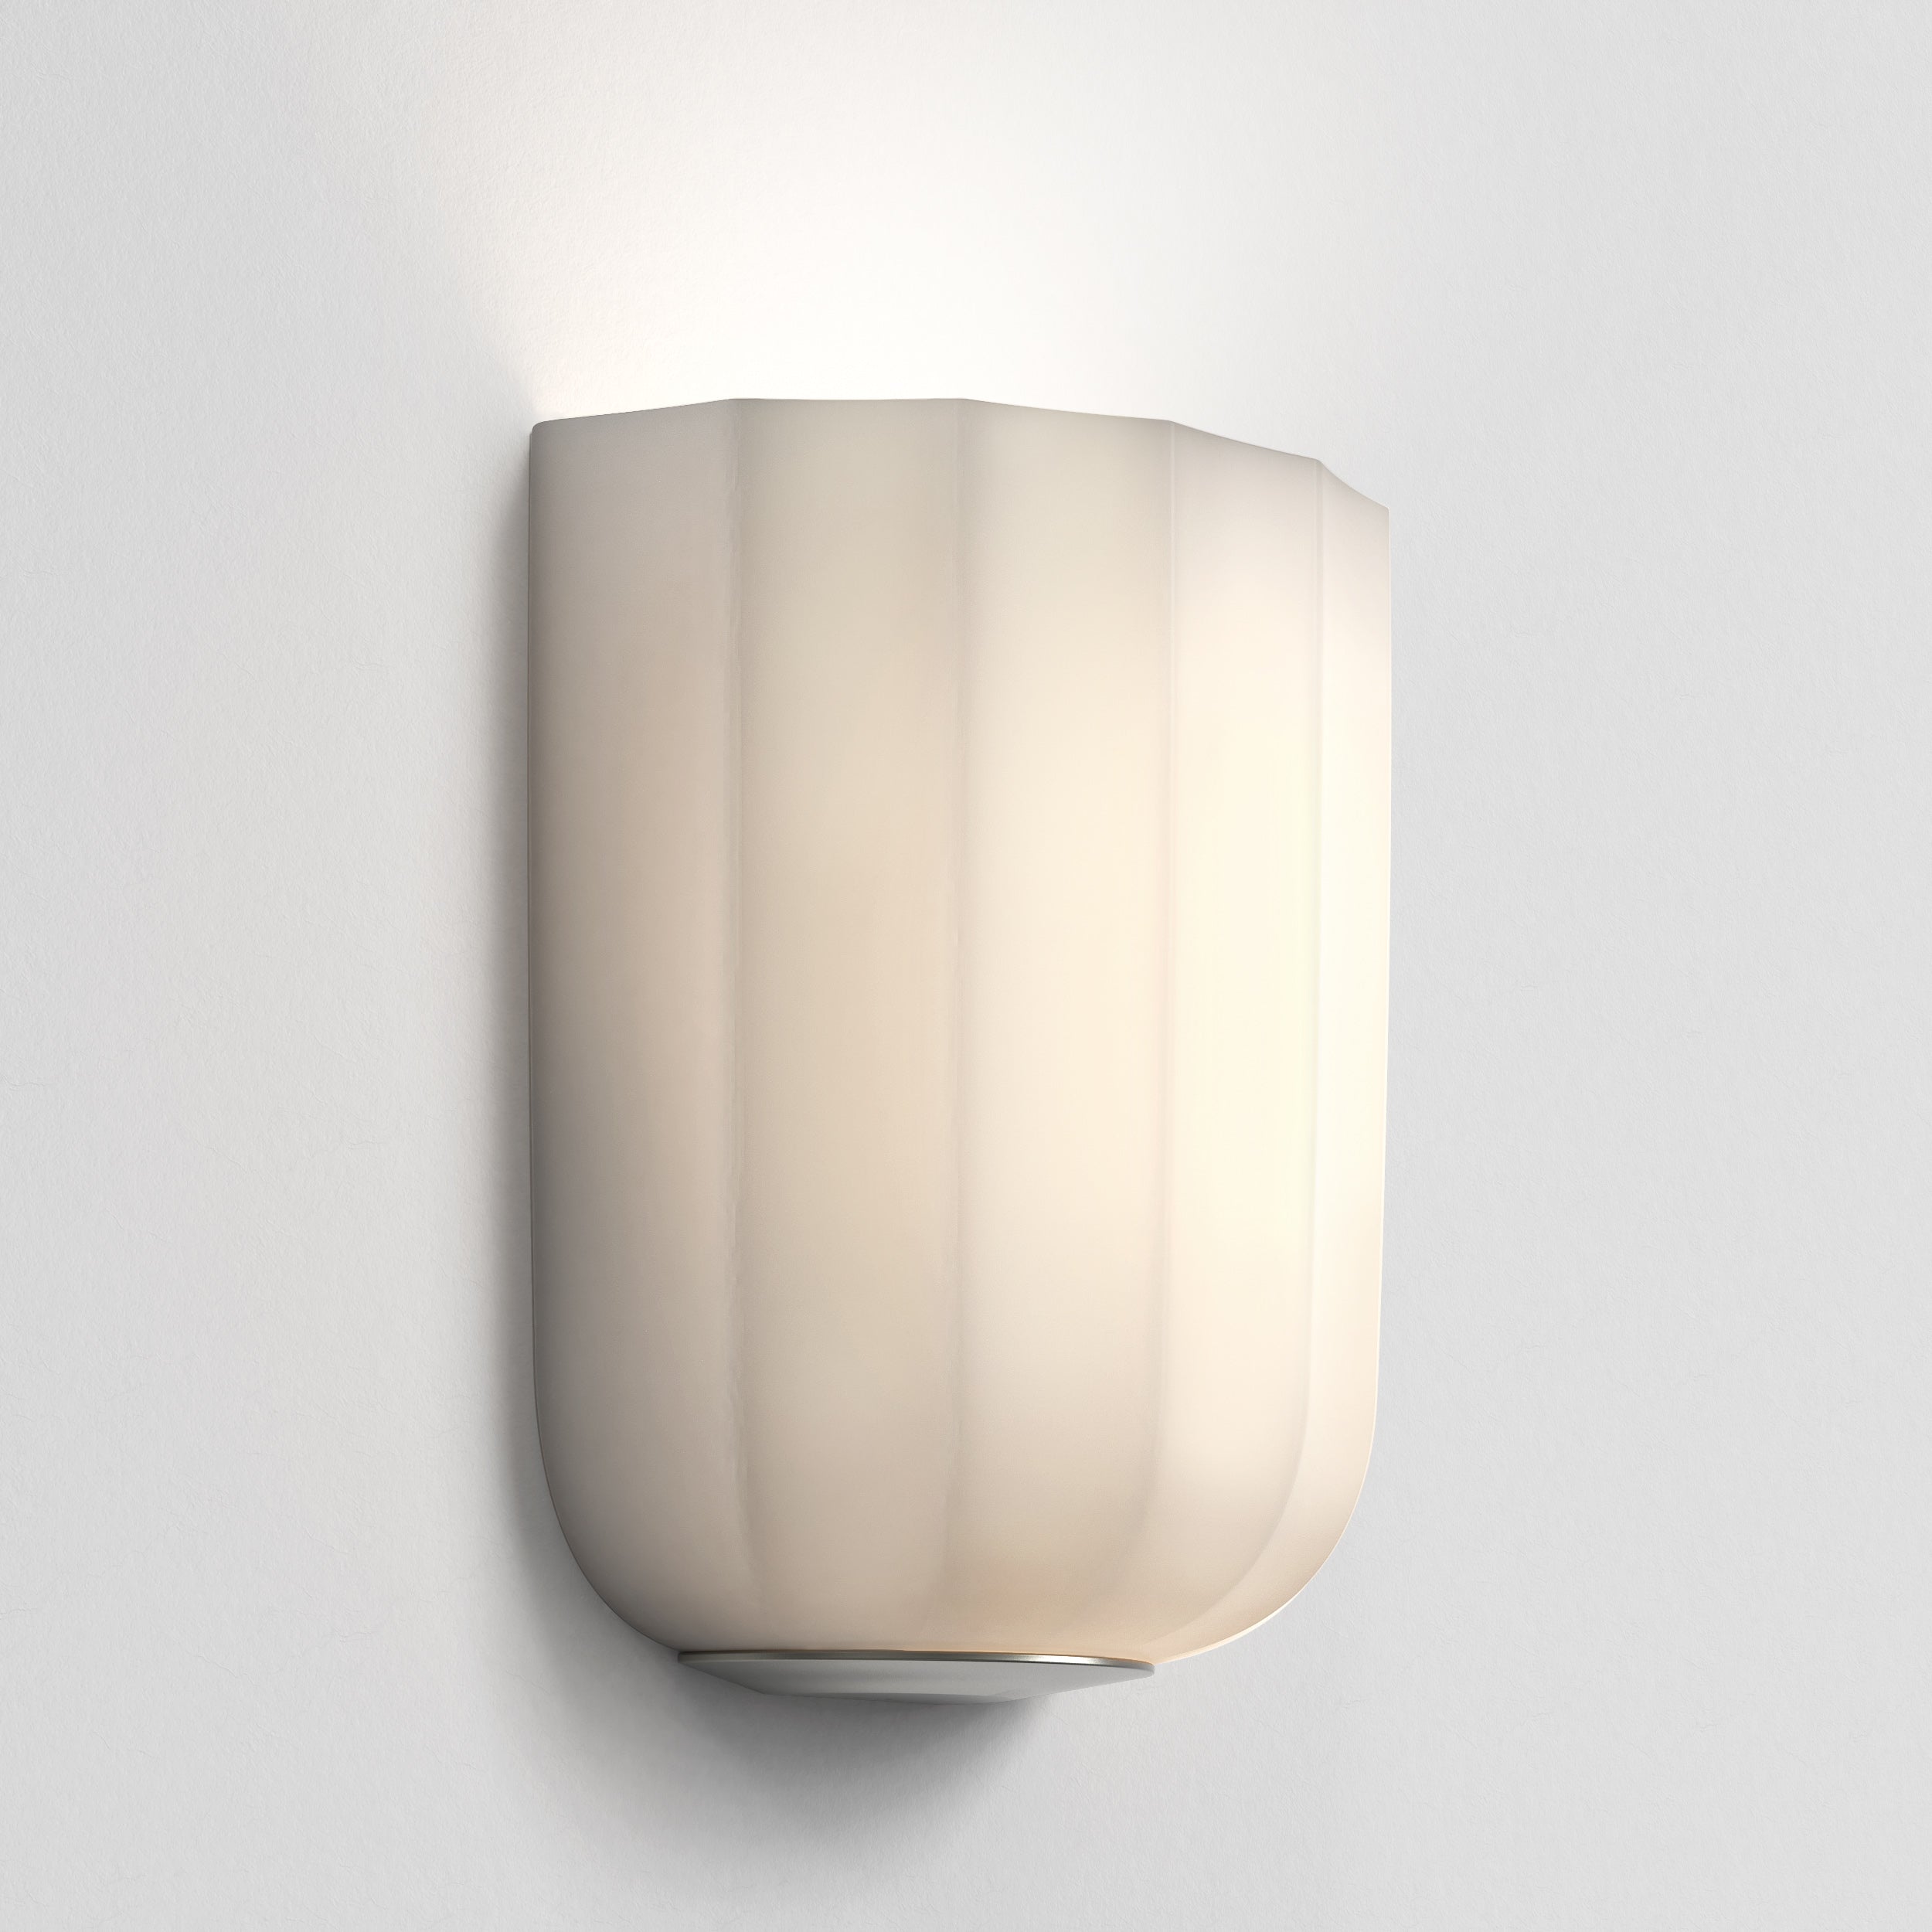 Astro Lighting Veo Wall Light Fixtures Astro Lighting 3.94x7.87x8.54 Matt Nickel No, LED E26/Medium